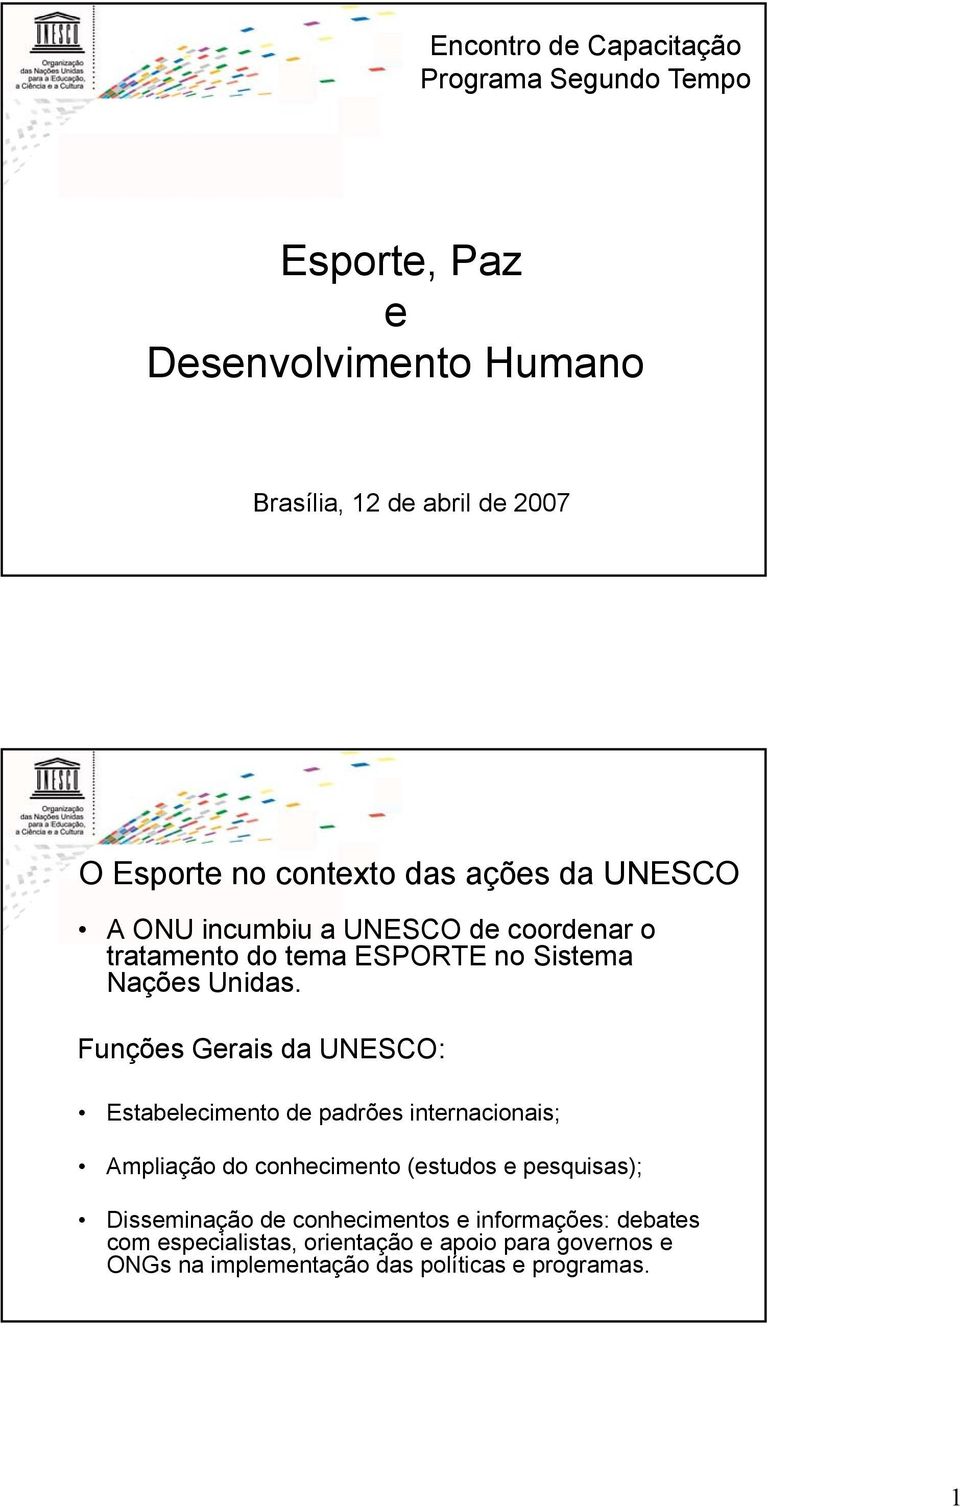 Funções Gerais da UNESCO: Estabelecimento de padrões internacionais; Ampliação do conhecimento (estudos e pesquisas); Disseminação